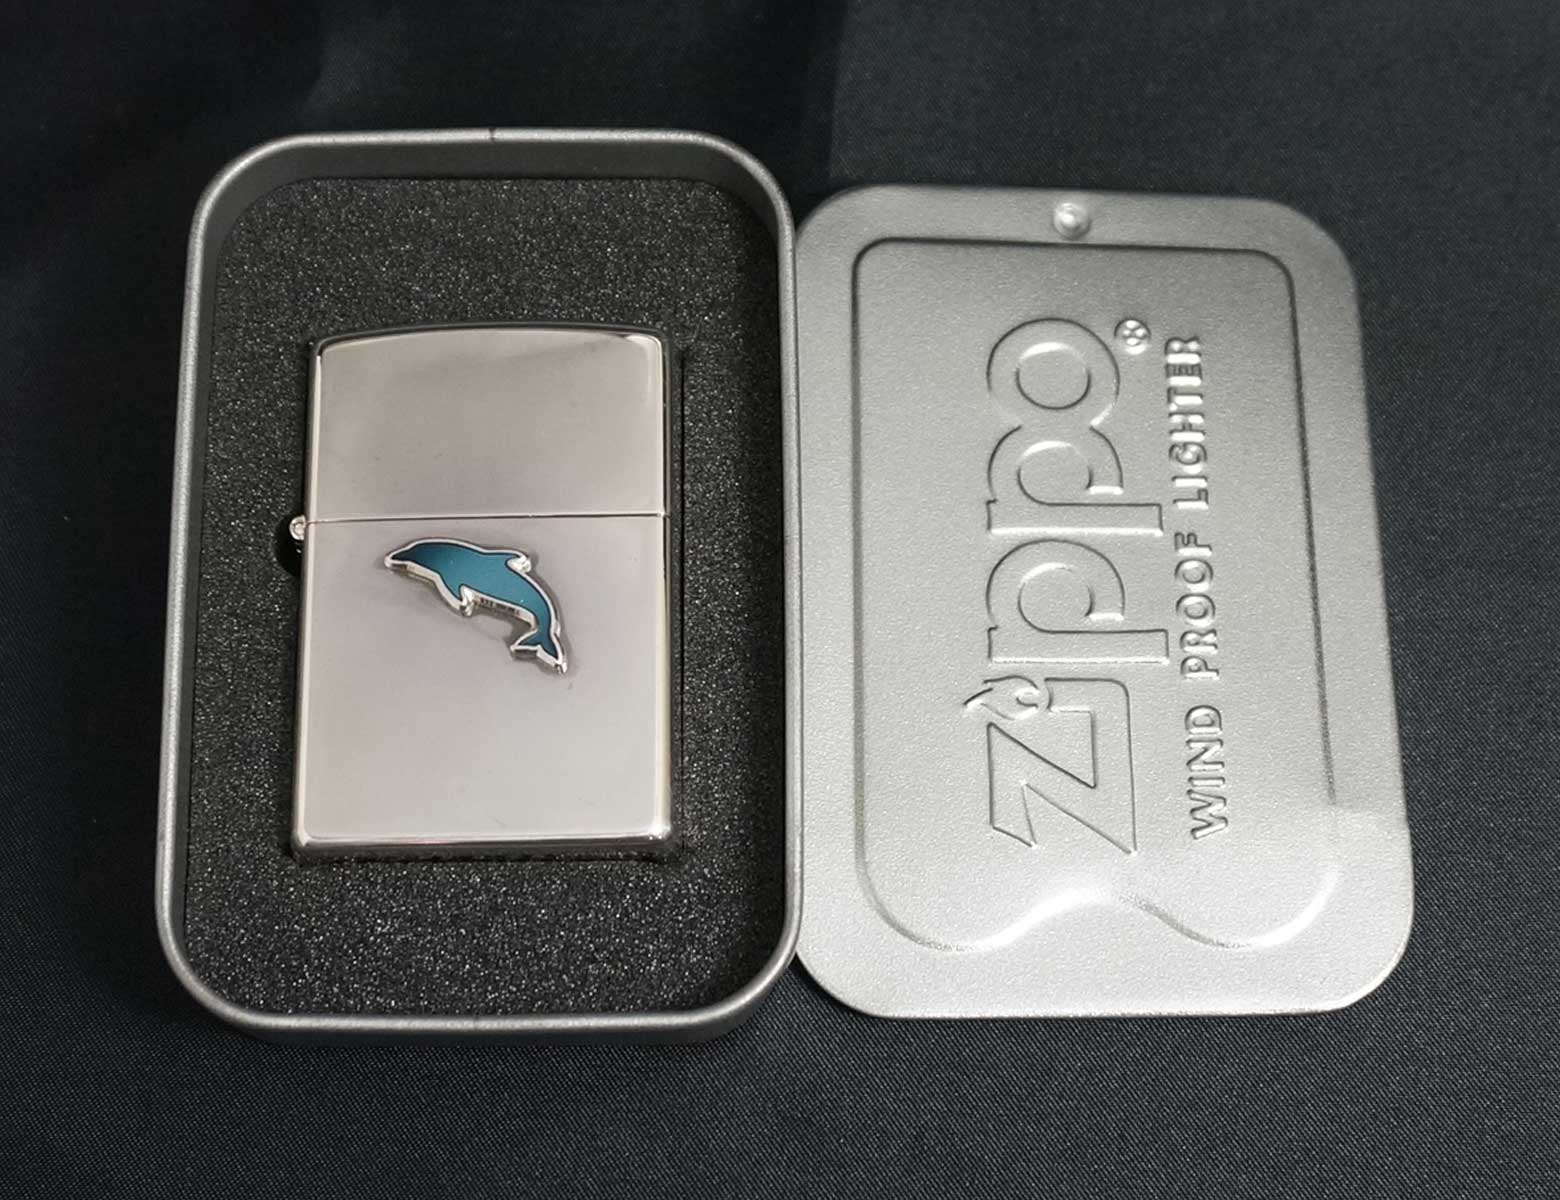 画像: zippo イルカメタル ブルー #250 2001年製造